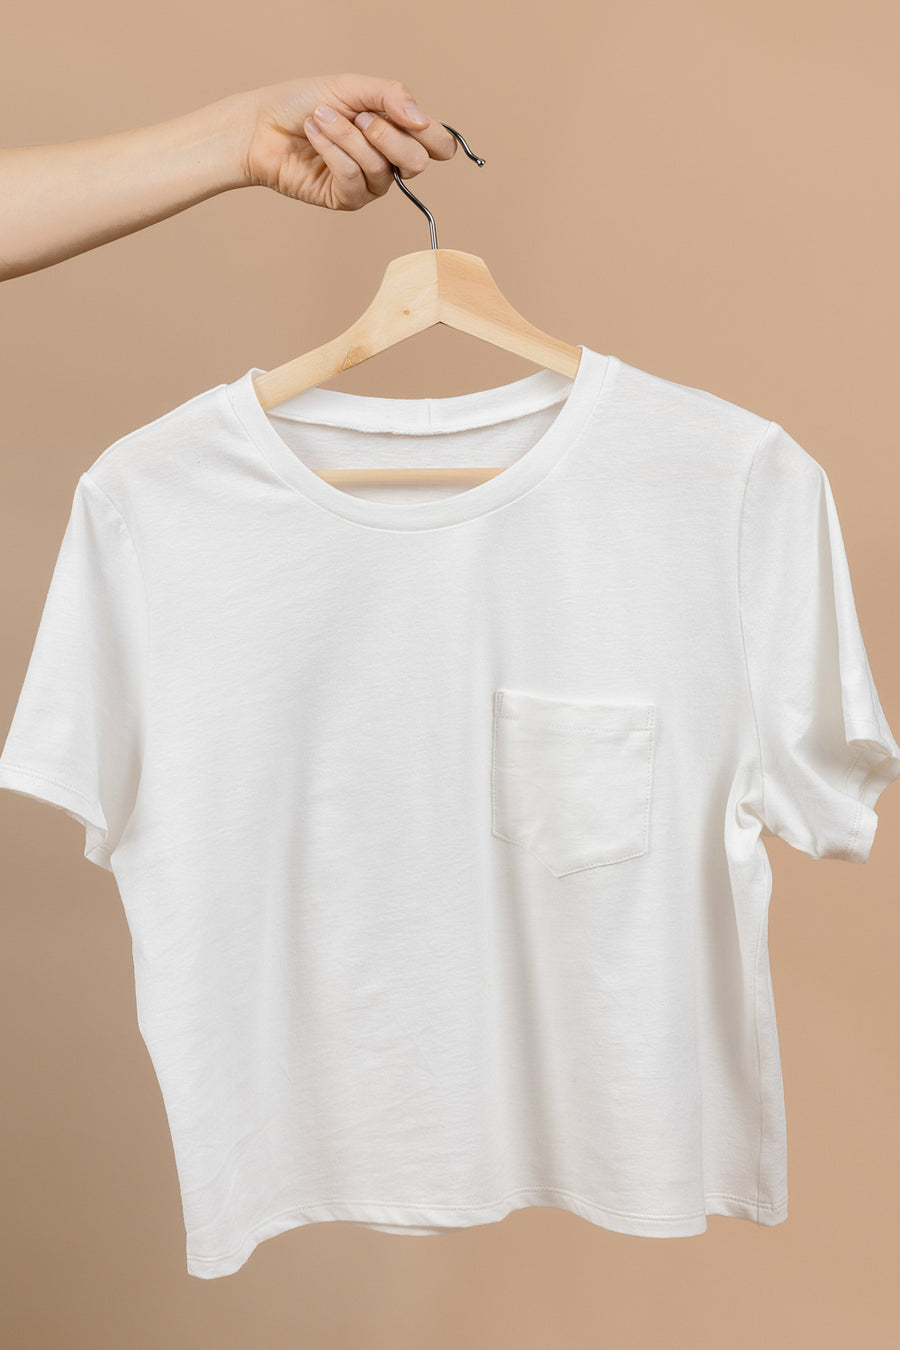 Core T-Shirt Pattern - Free Tshirt Pattern